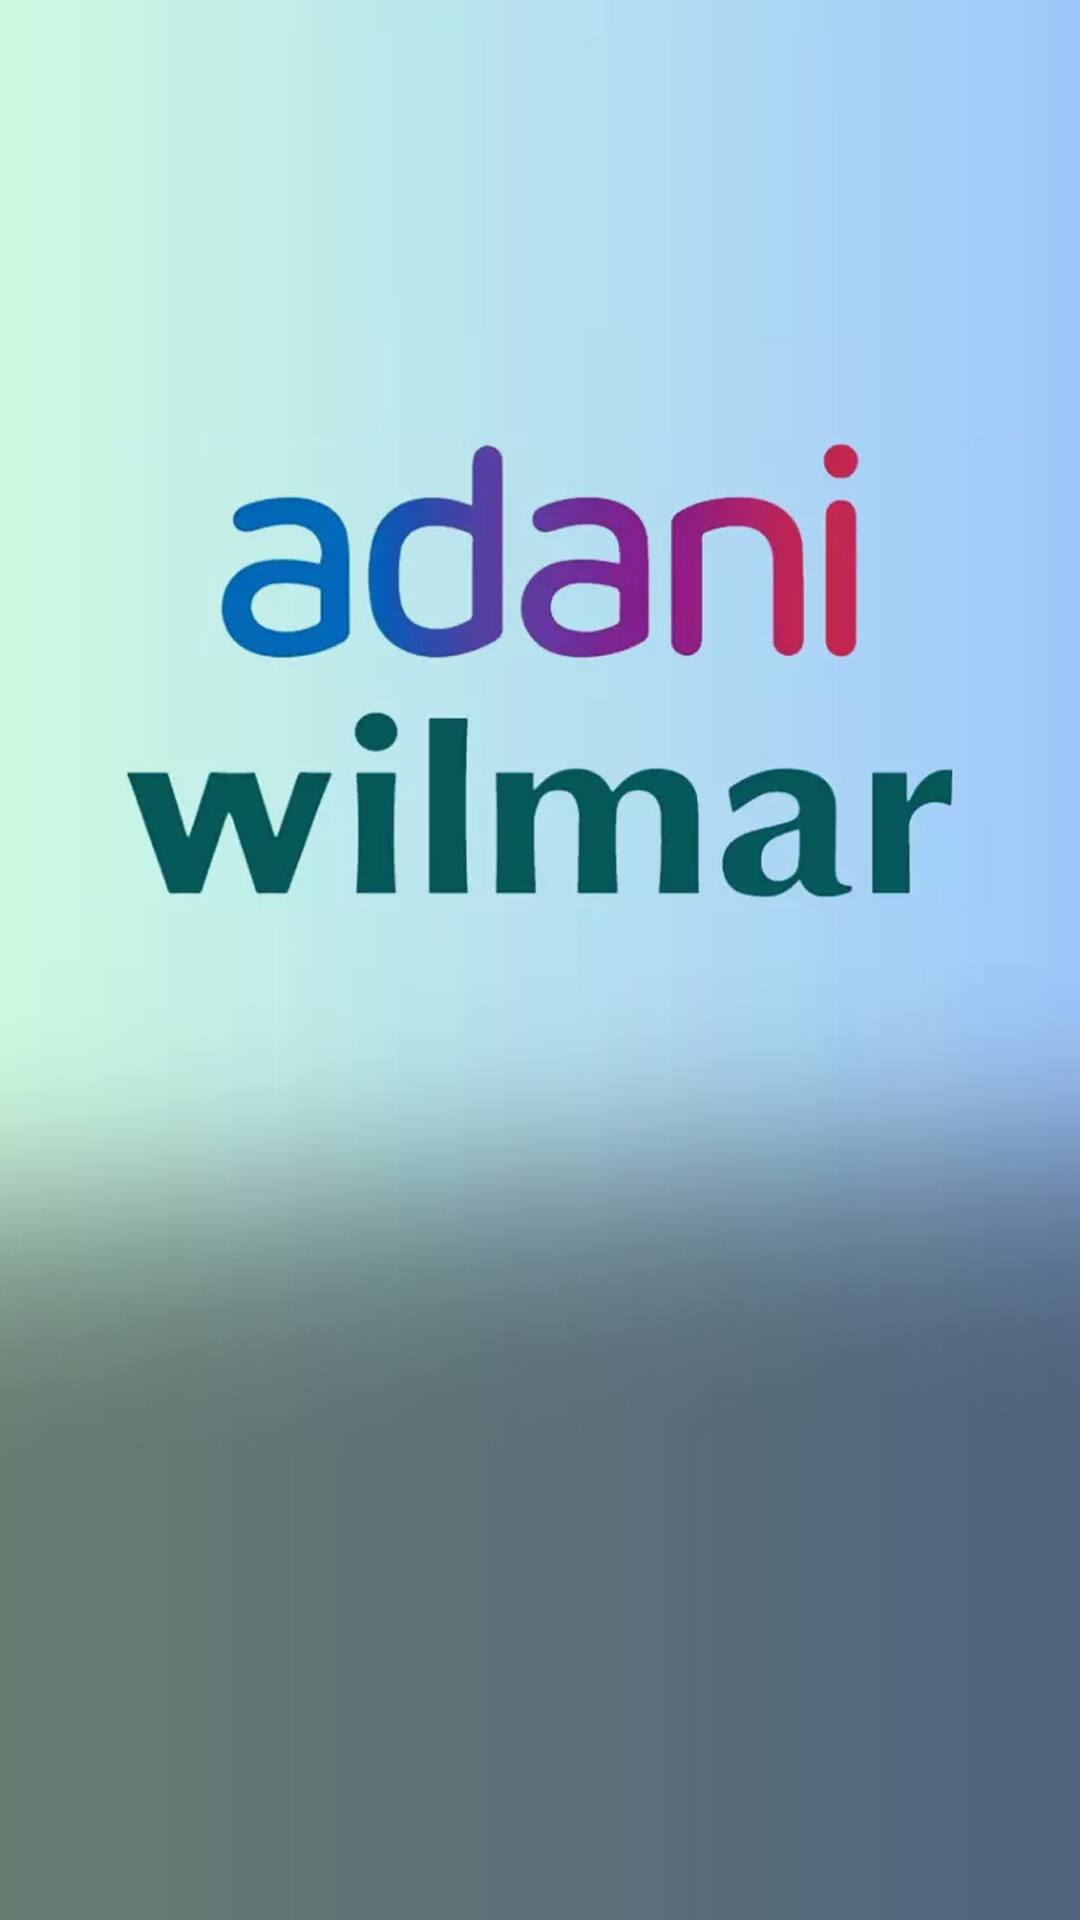 adani logo India